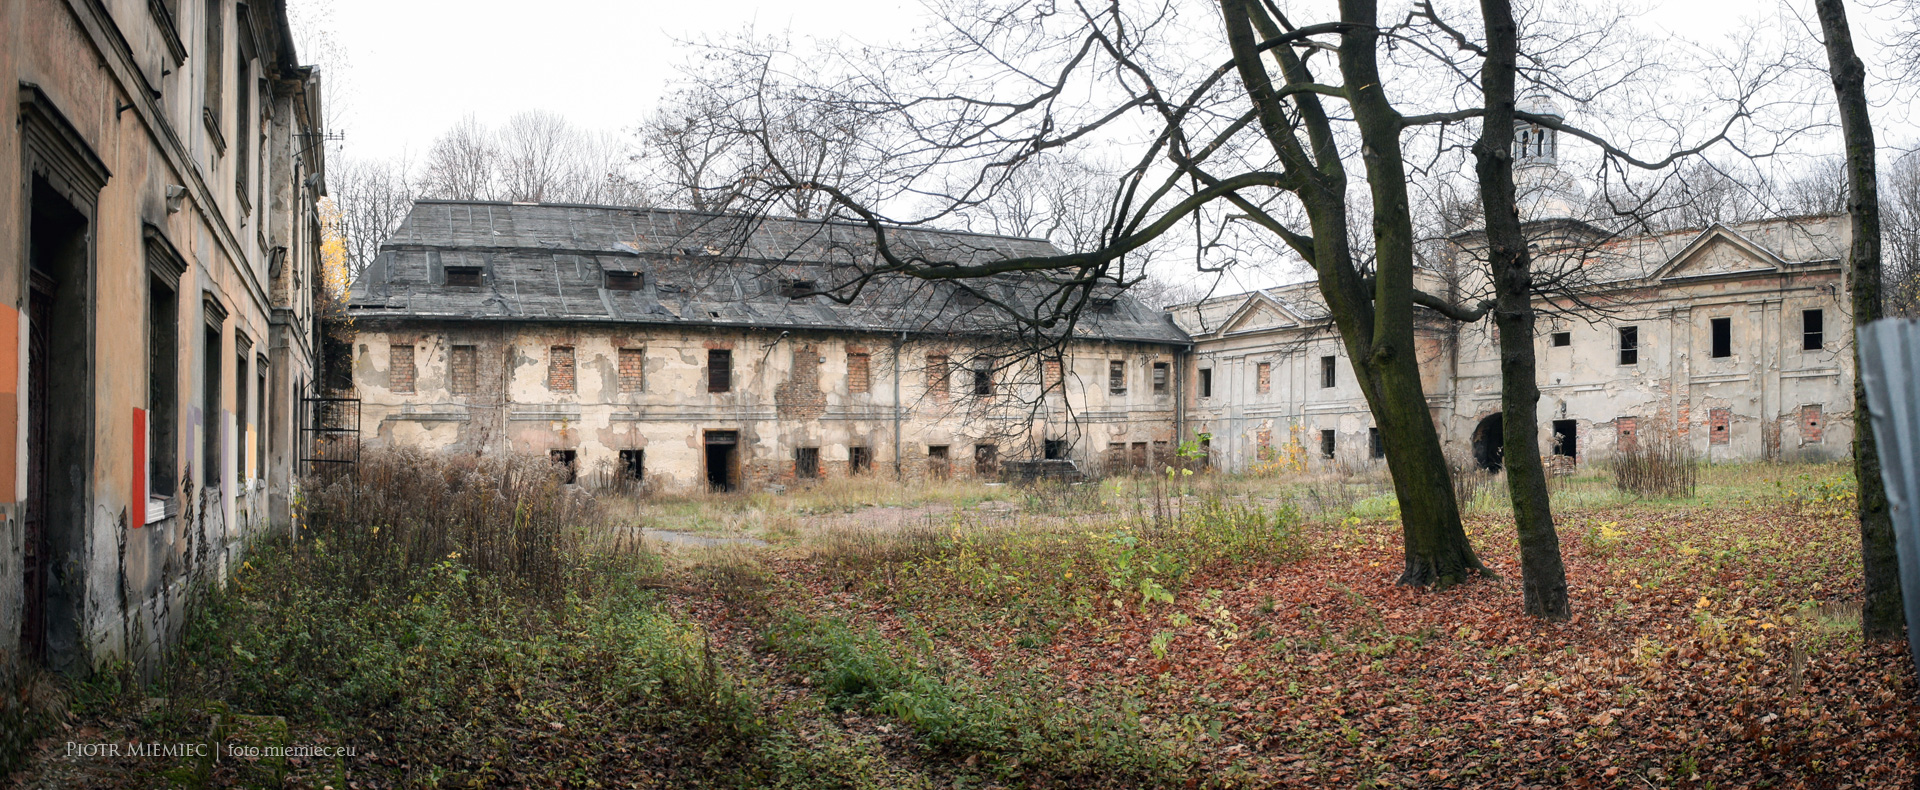 Pałac w Siemianowicach Śląskich - listopad 2013